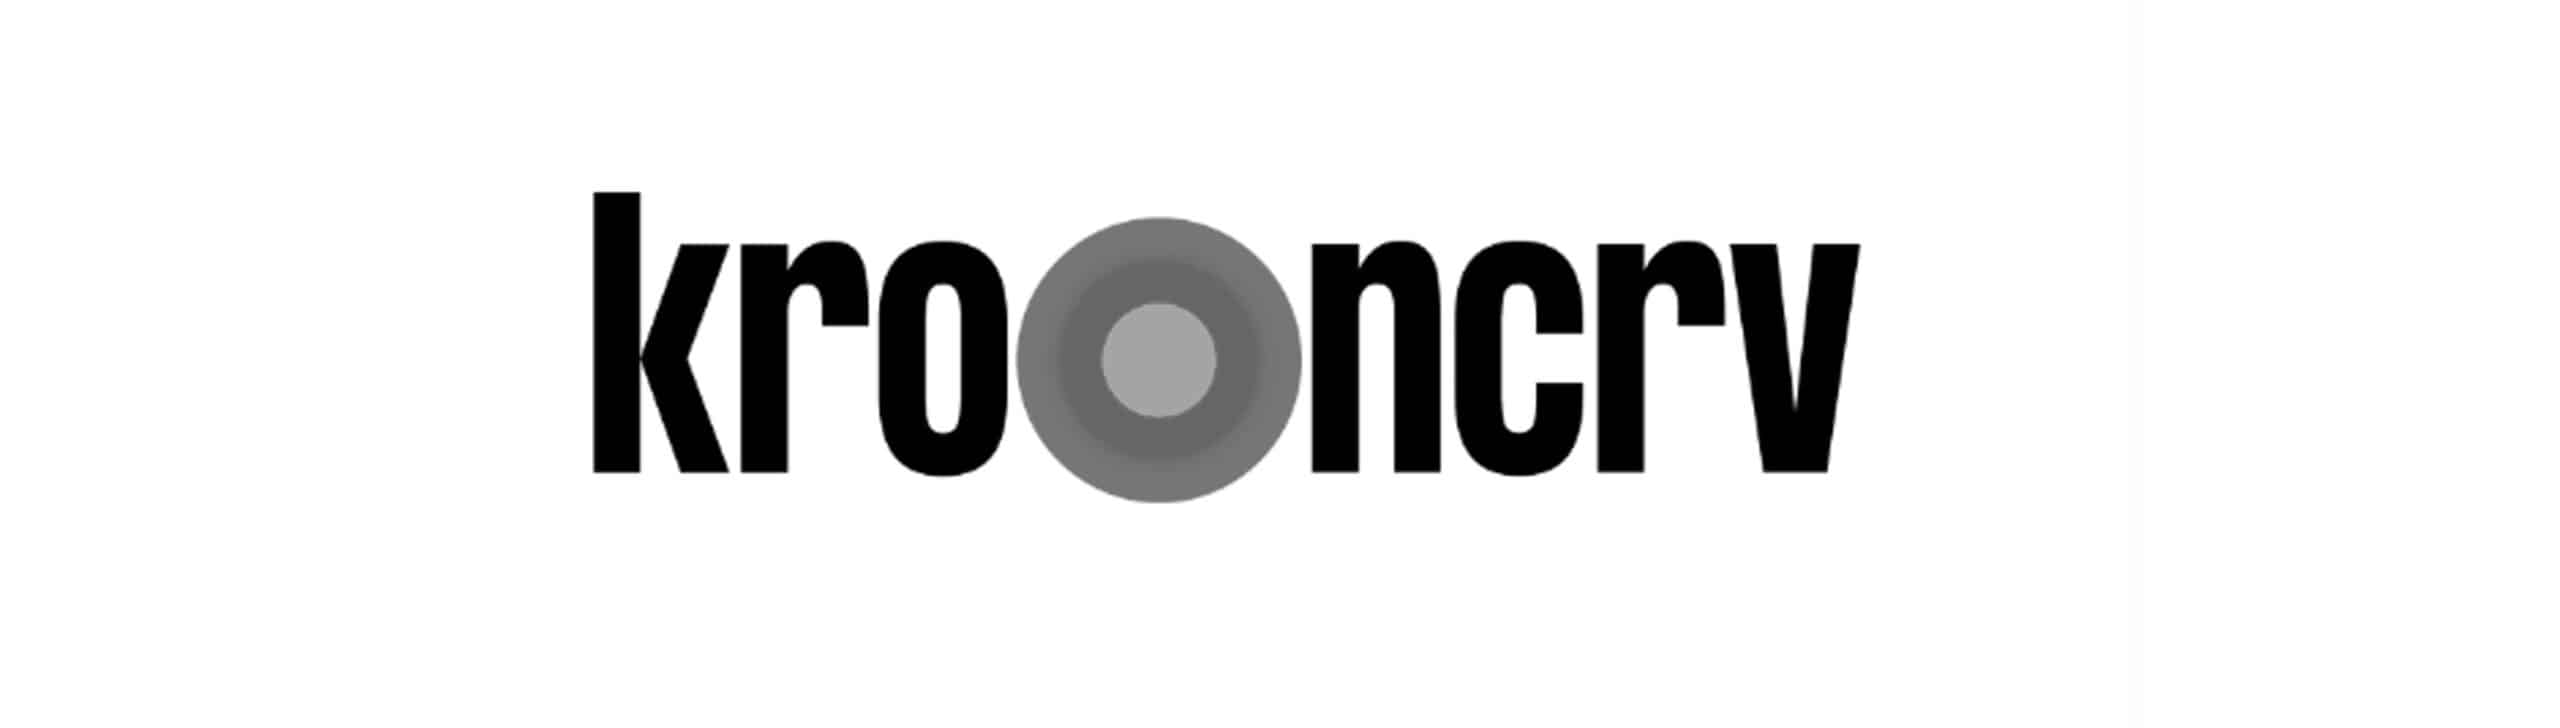 KRONCRV-logo